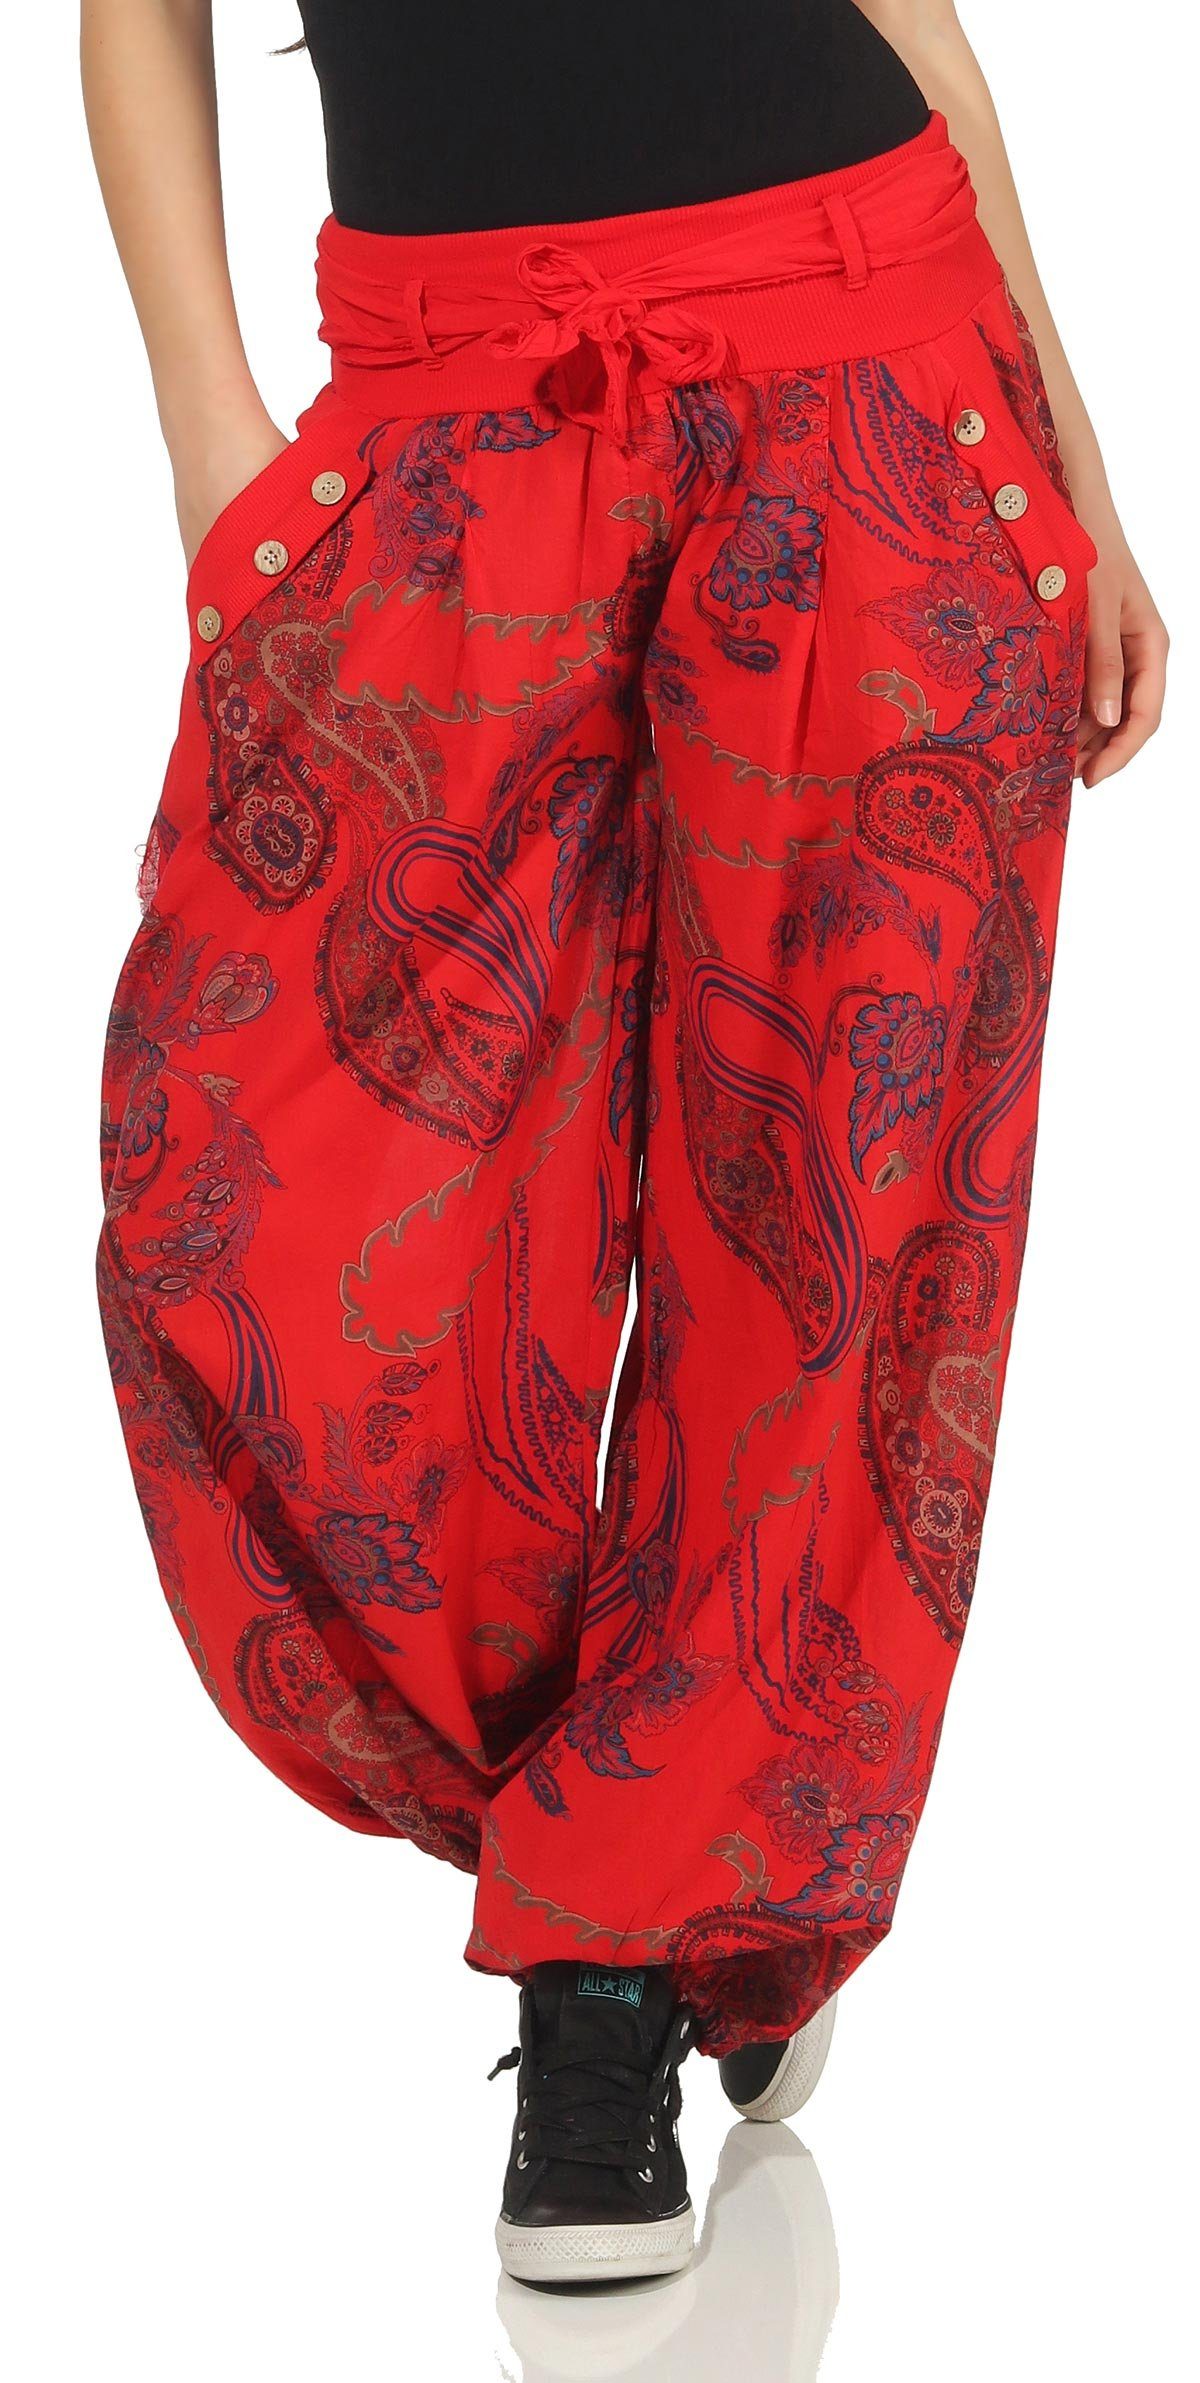 malito more than fashion Haremshose 3485 bequeme Hose mit elastischem Jerseybund Einheitsgröße rot